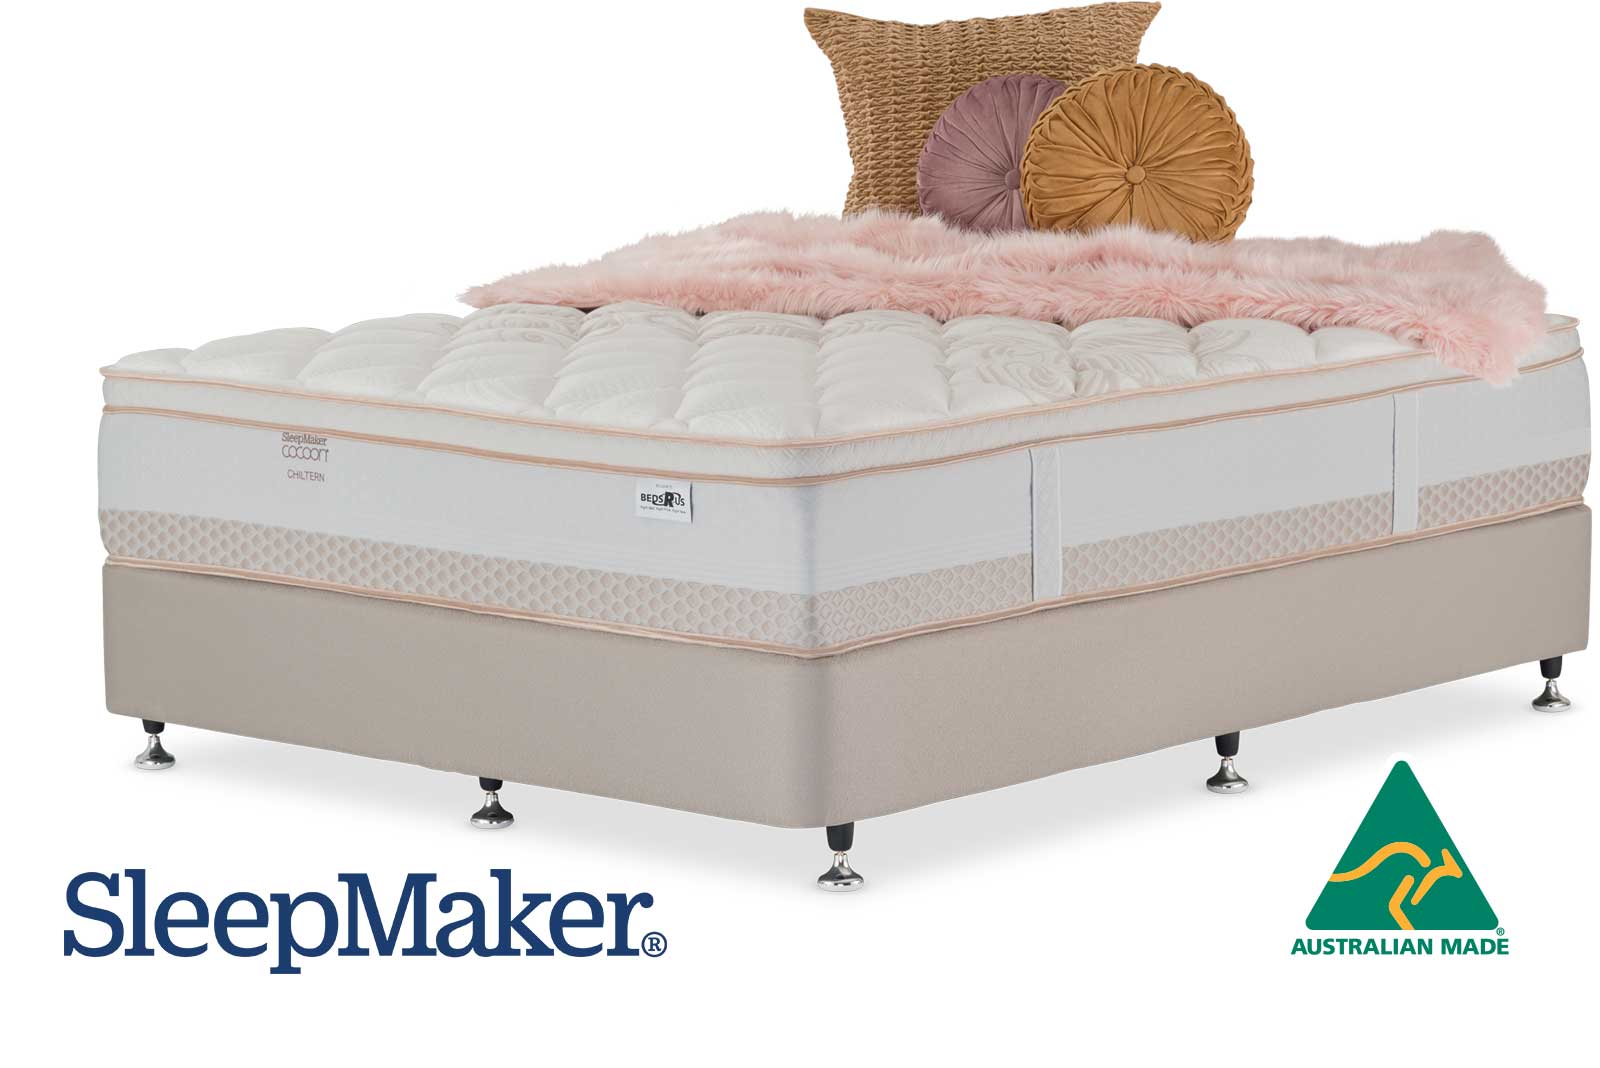 sleepmaker physio mattress reviews